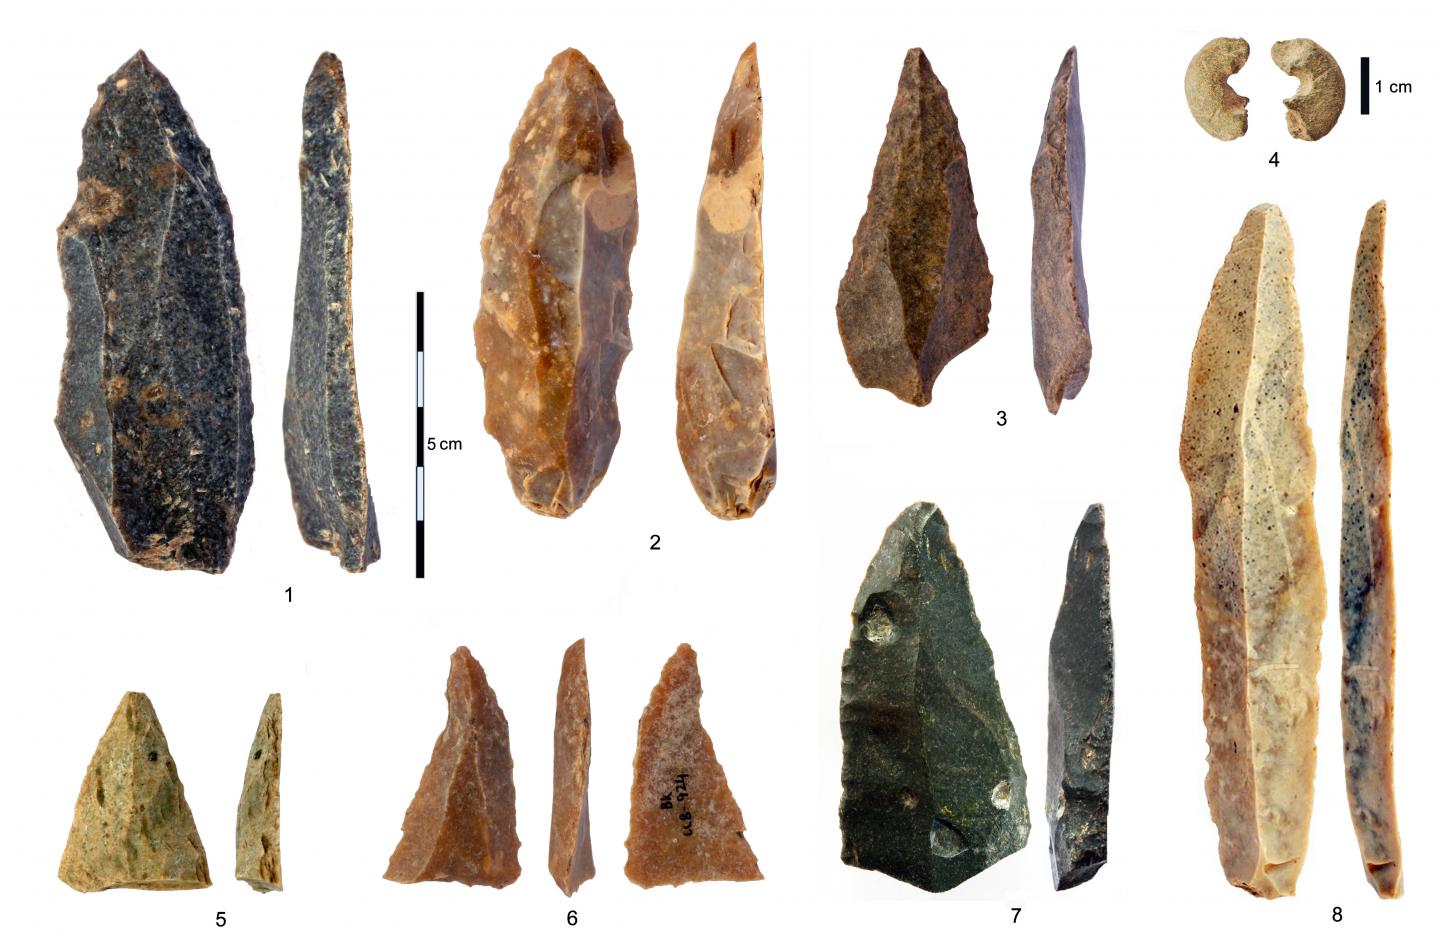 ancient human tools